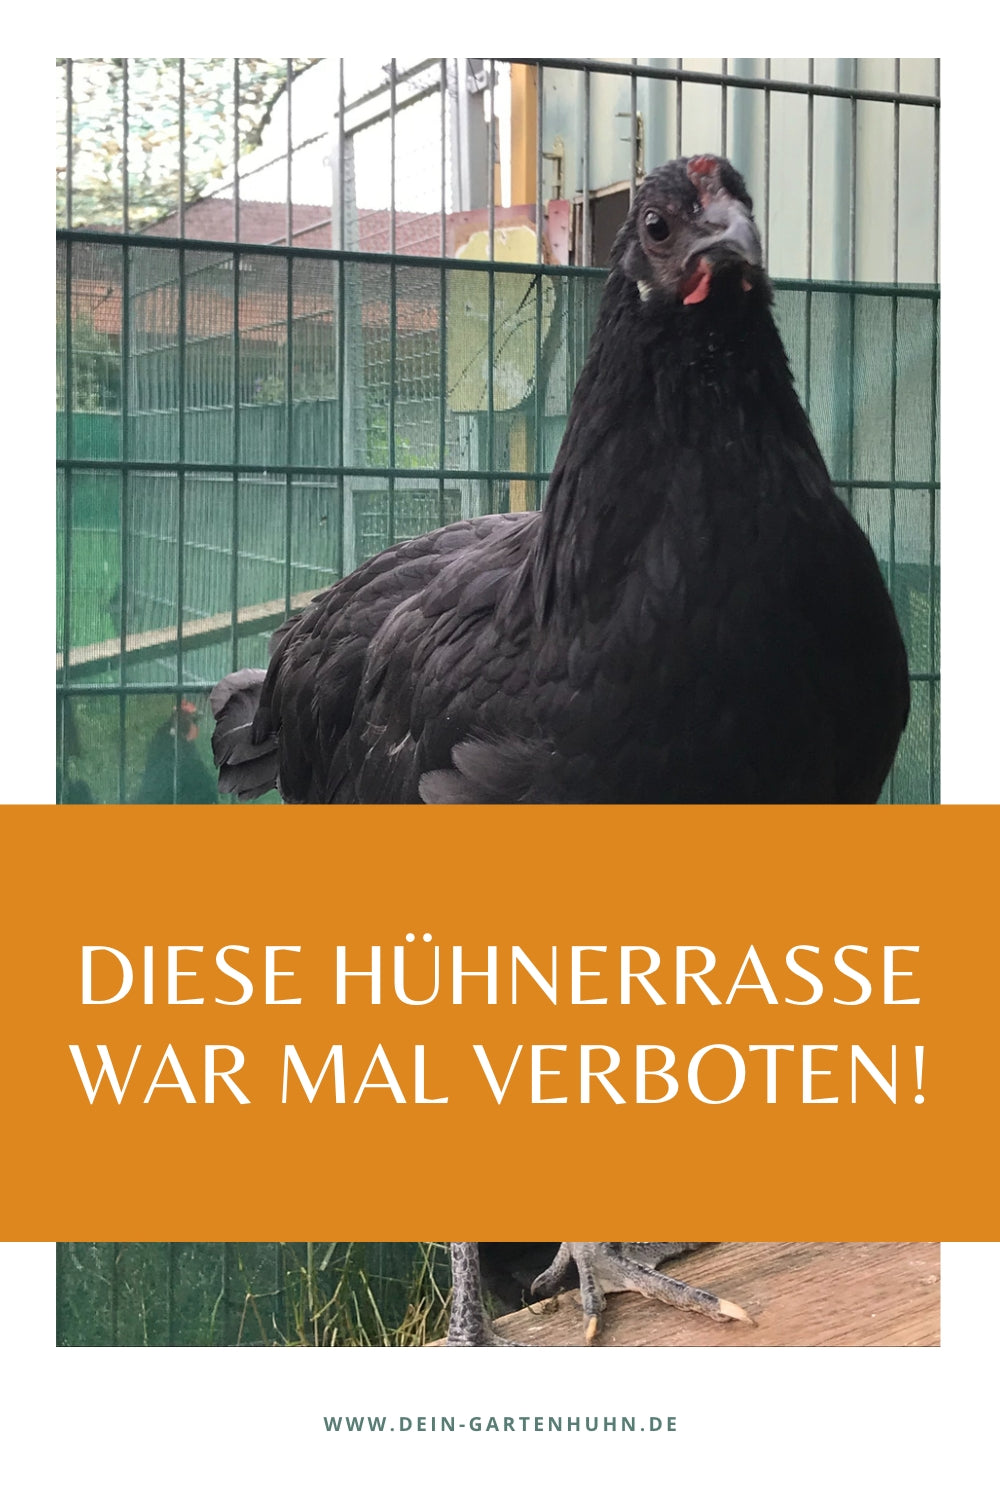 Abgebildet ist eine Augsburger Junghenne. Auf dem Textfeld steht: Diese Hühnerrasse war mal verboten.